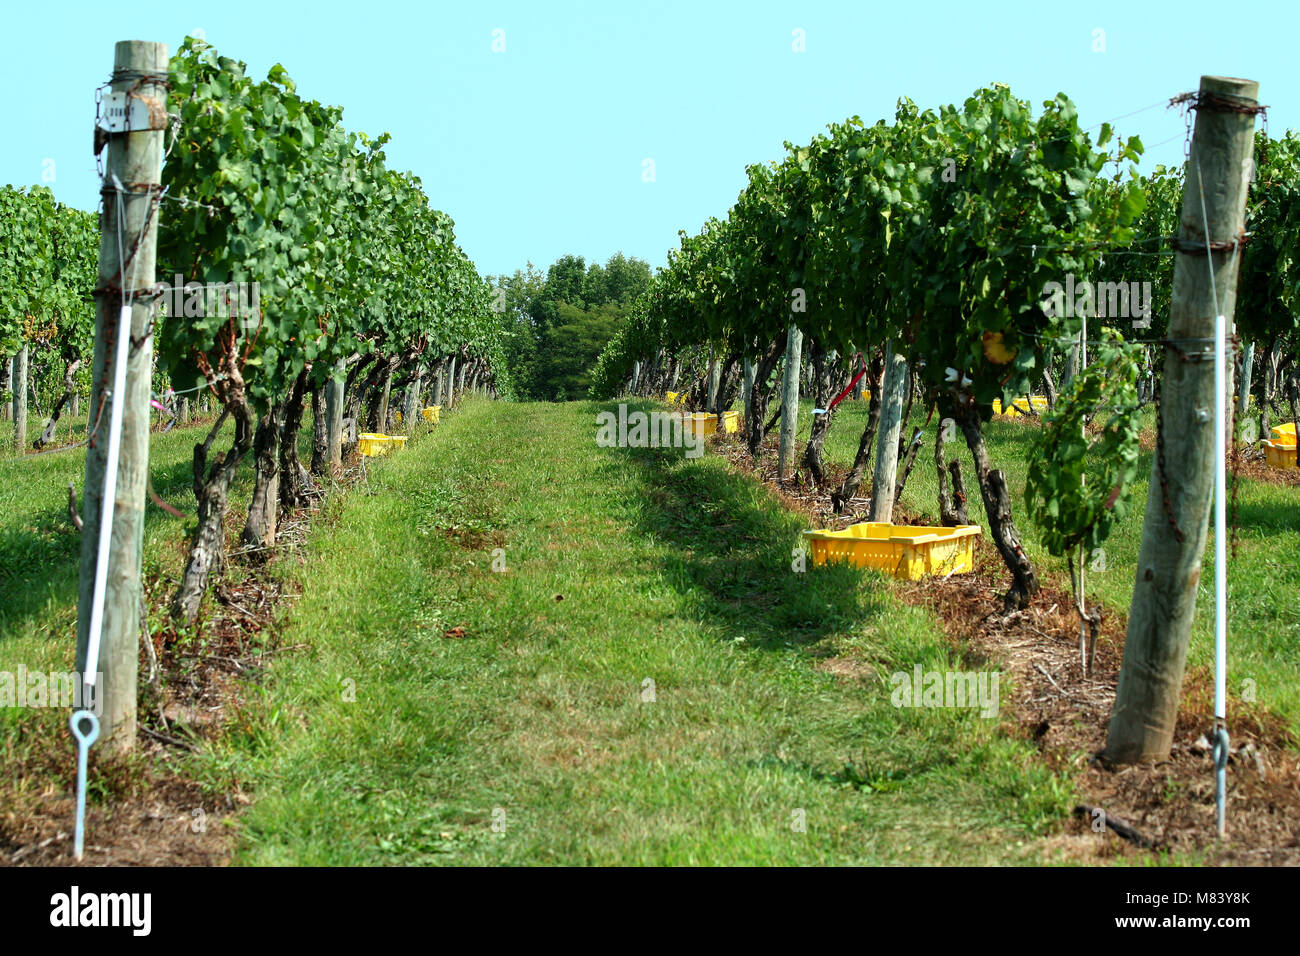 Row of grapes at a vinyard Stock Photo